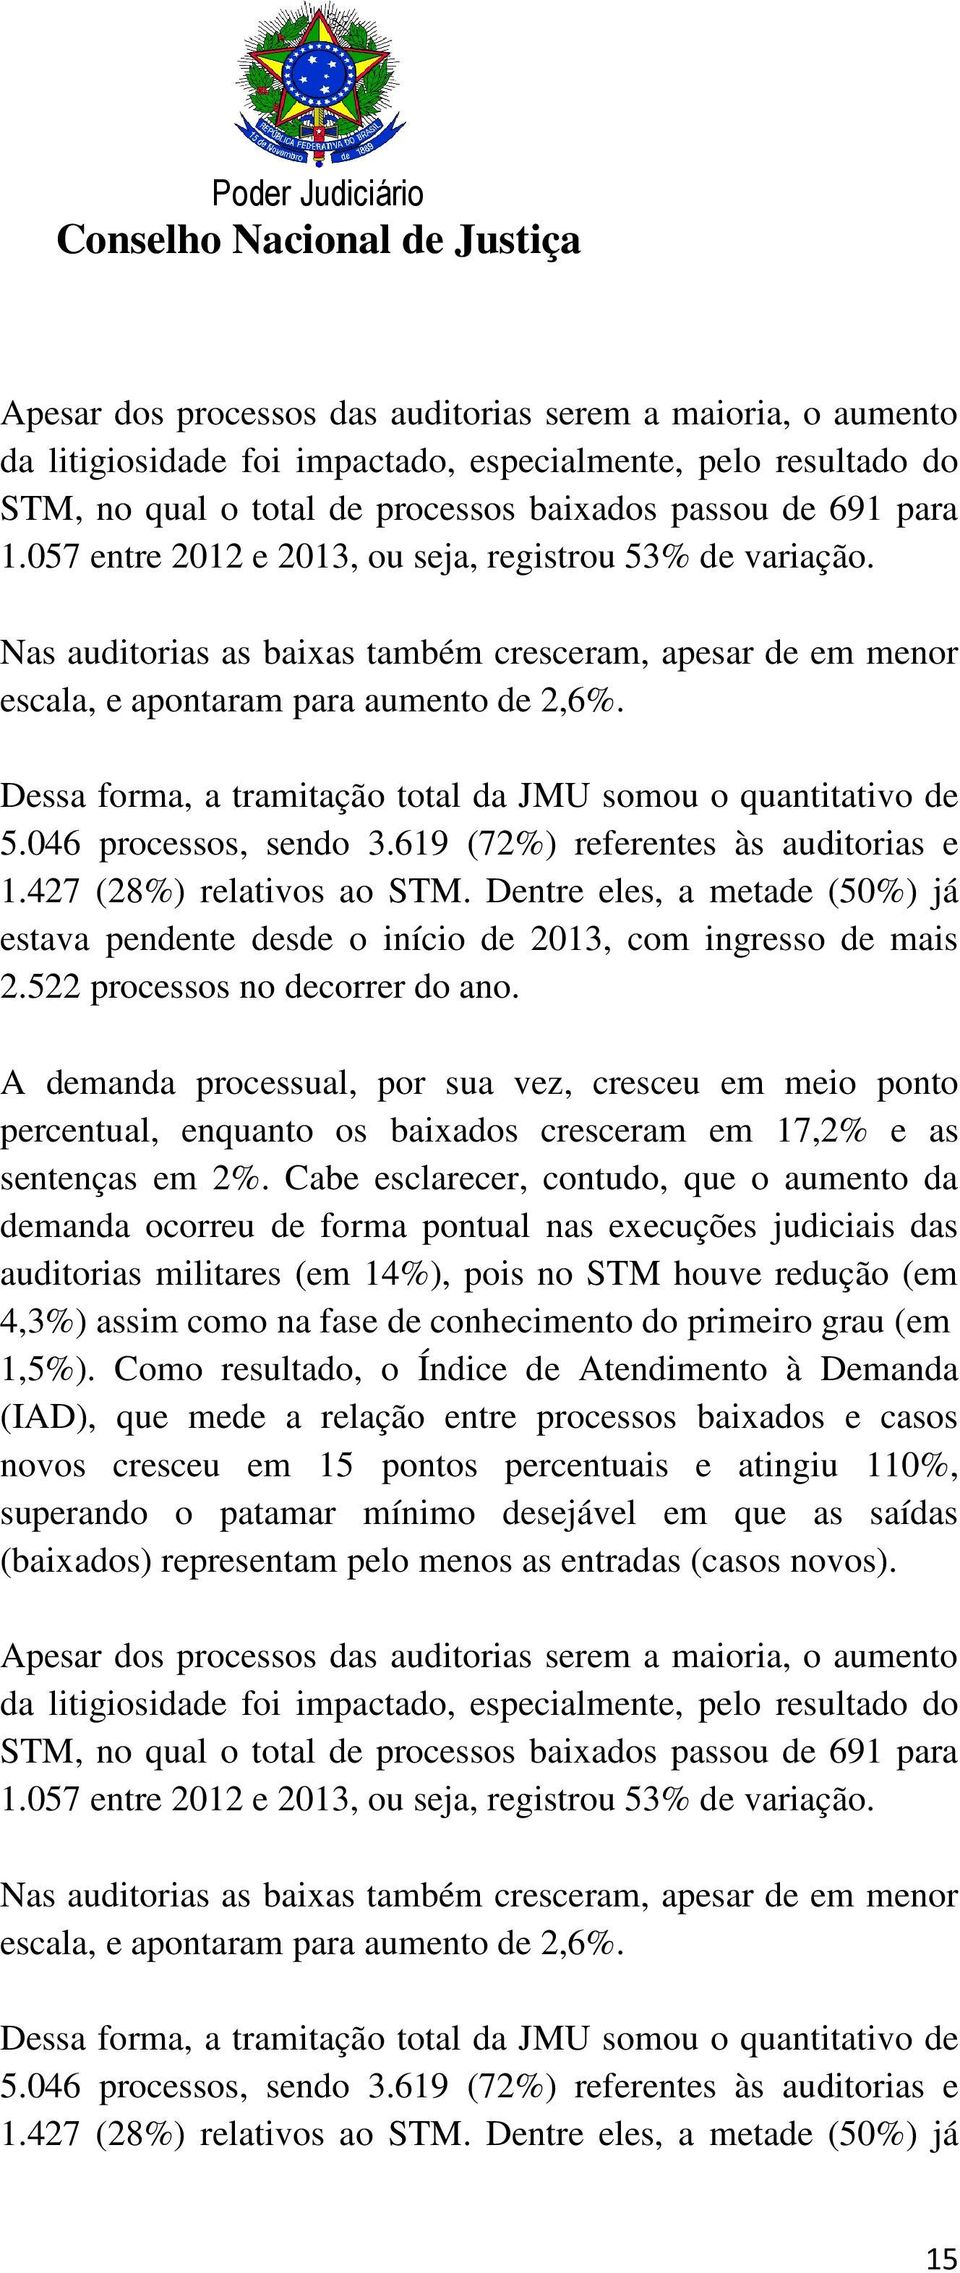 Dessa forma, a tramitação total da JMU somou o quantitativo de 5.046 processos, sendo 3.619 (72%) referentes às auditorias e 1.427 (28%) relativos ao STM.